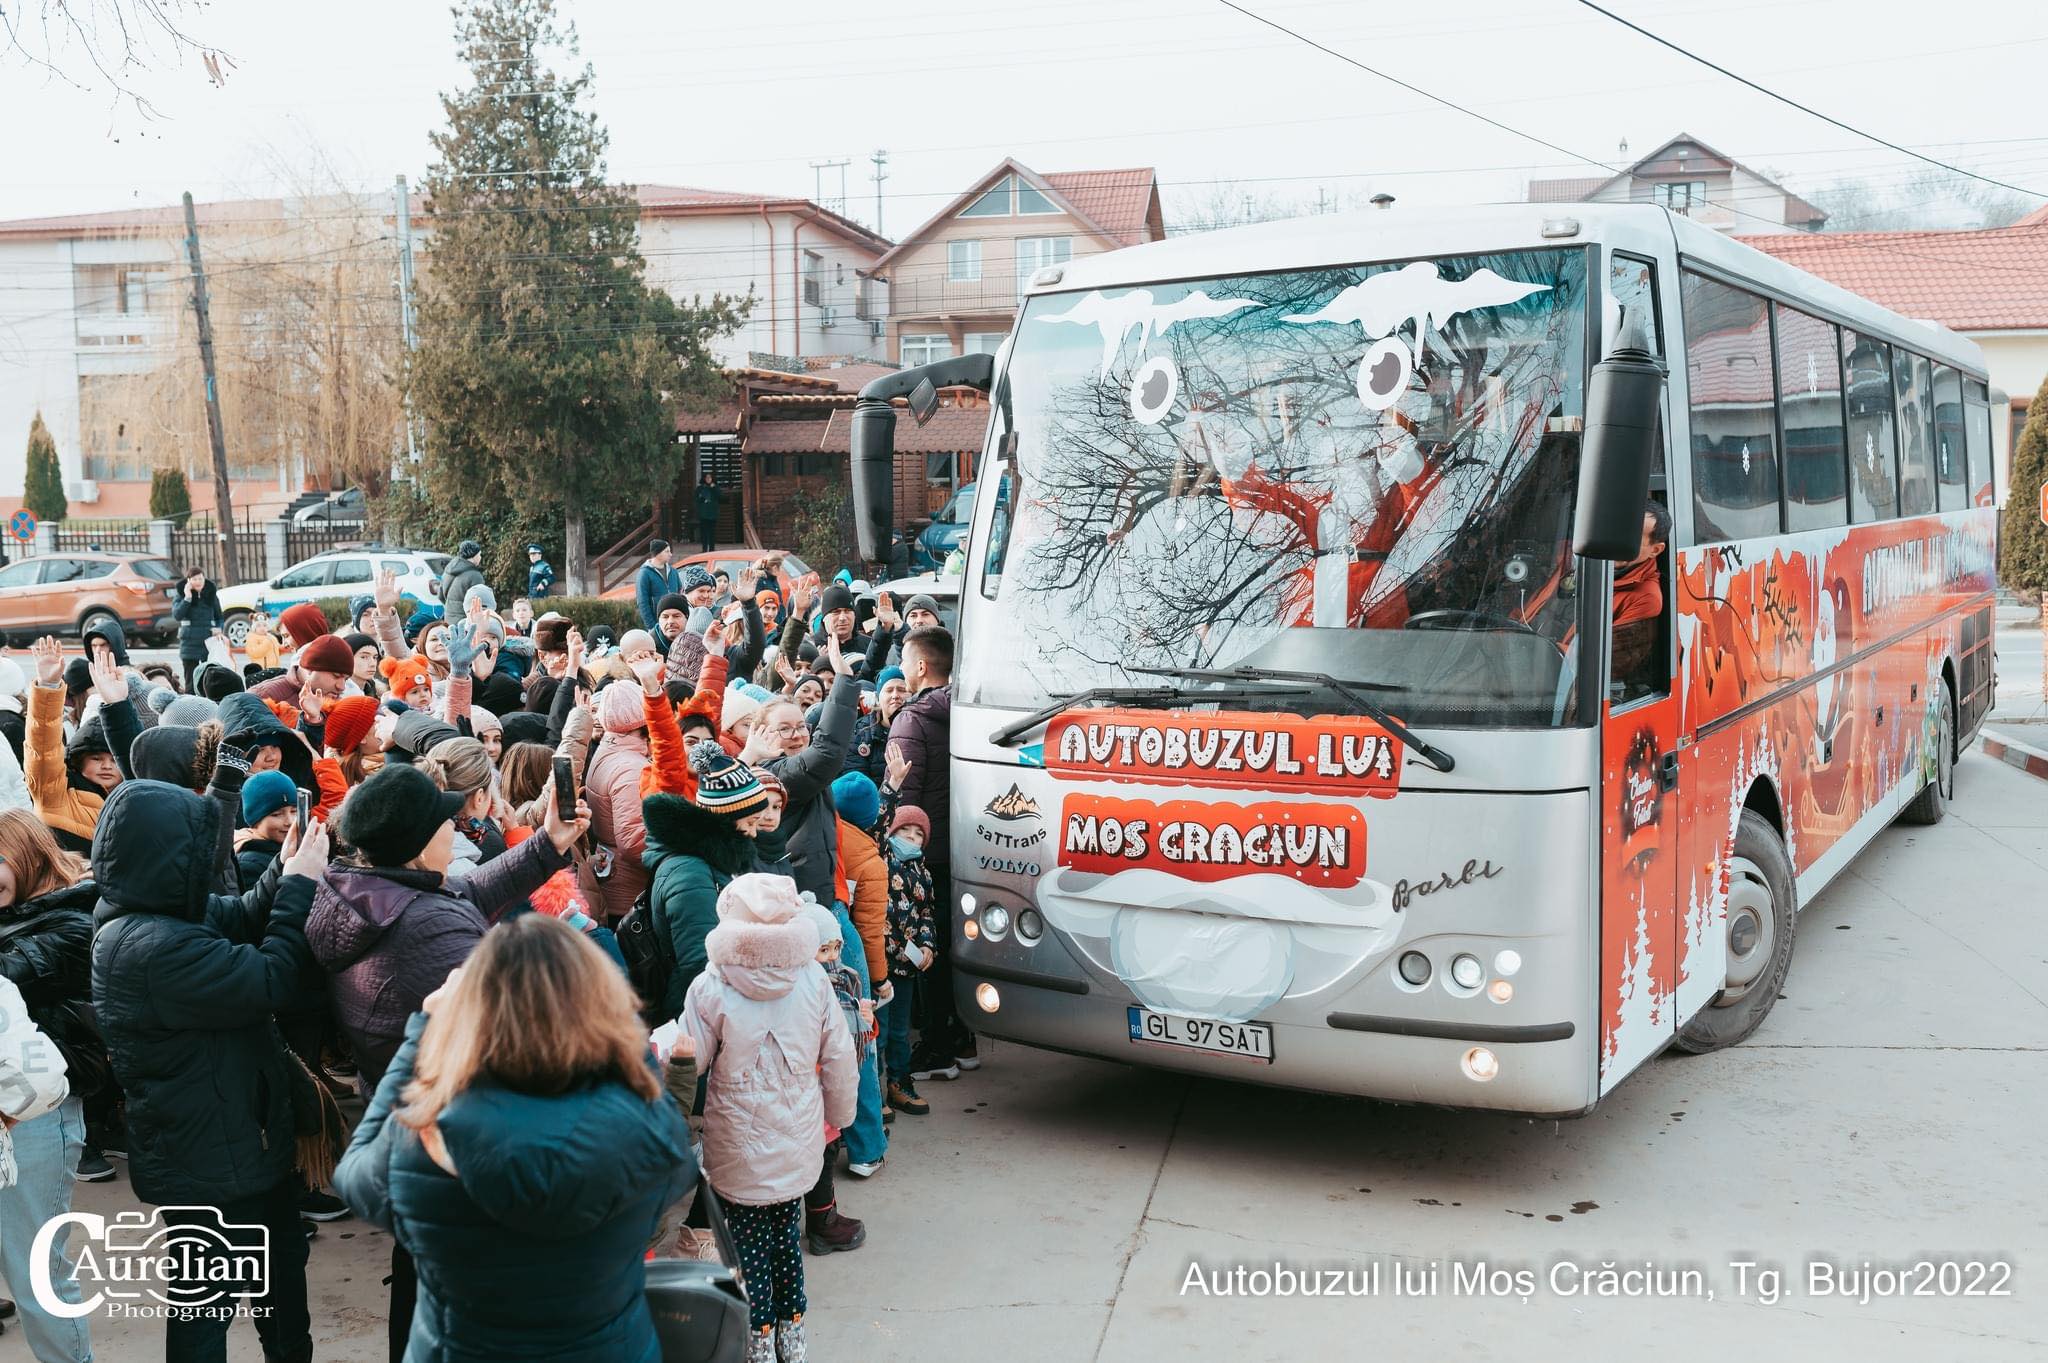 Autobuzul lui Moş Crăciun porneşte la drum în judeţul Galaţi